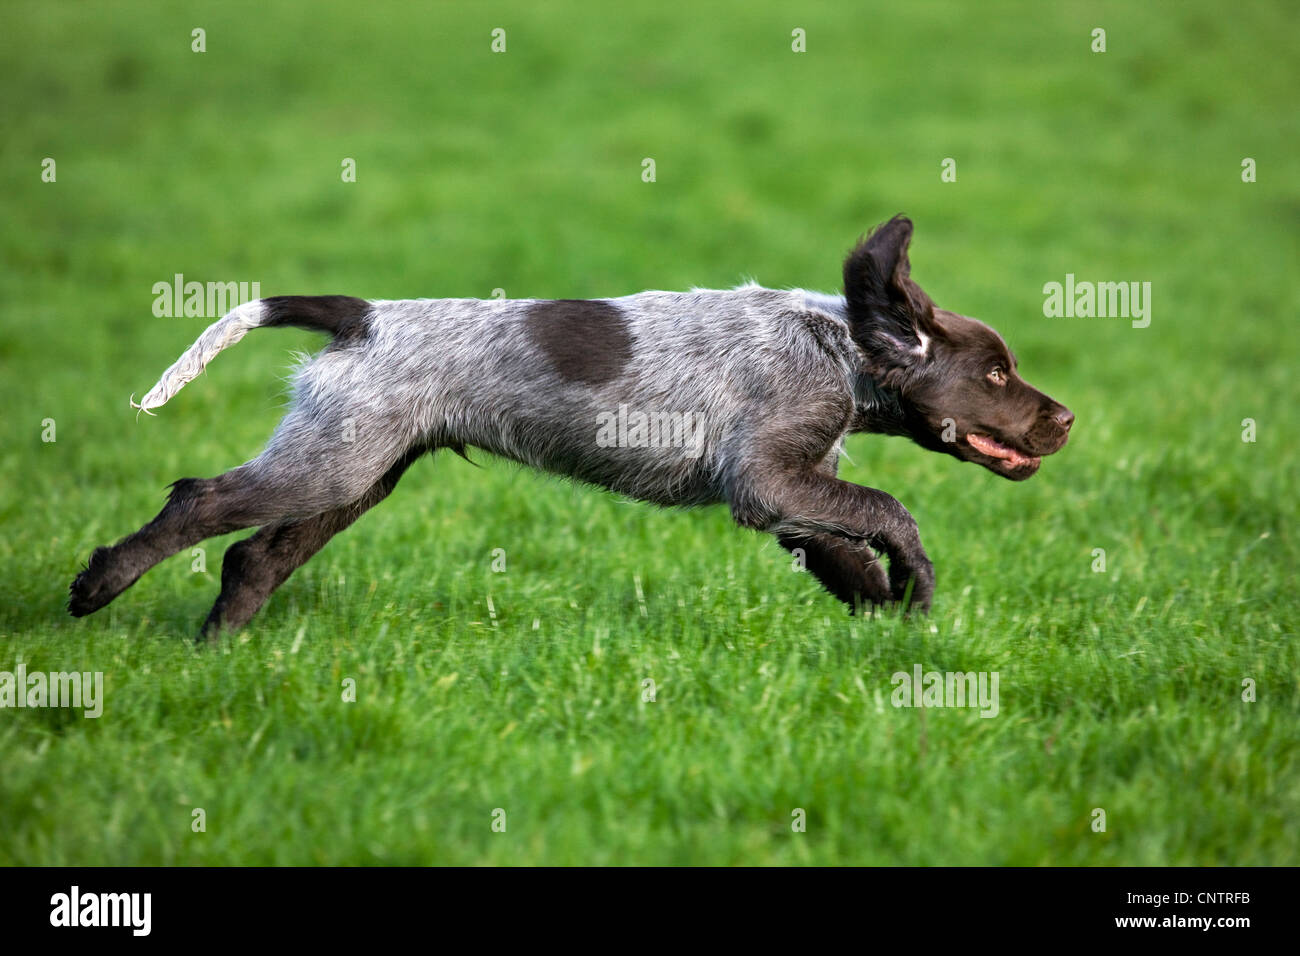 Small Munsterlander / Kleiner Münsterländer (Canis lupus familiaris), pup running in garden Stock Photo